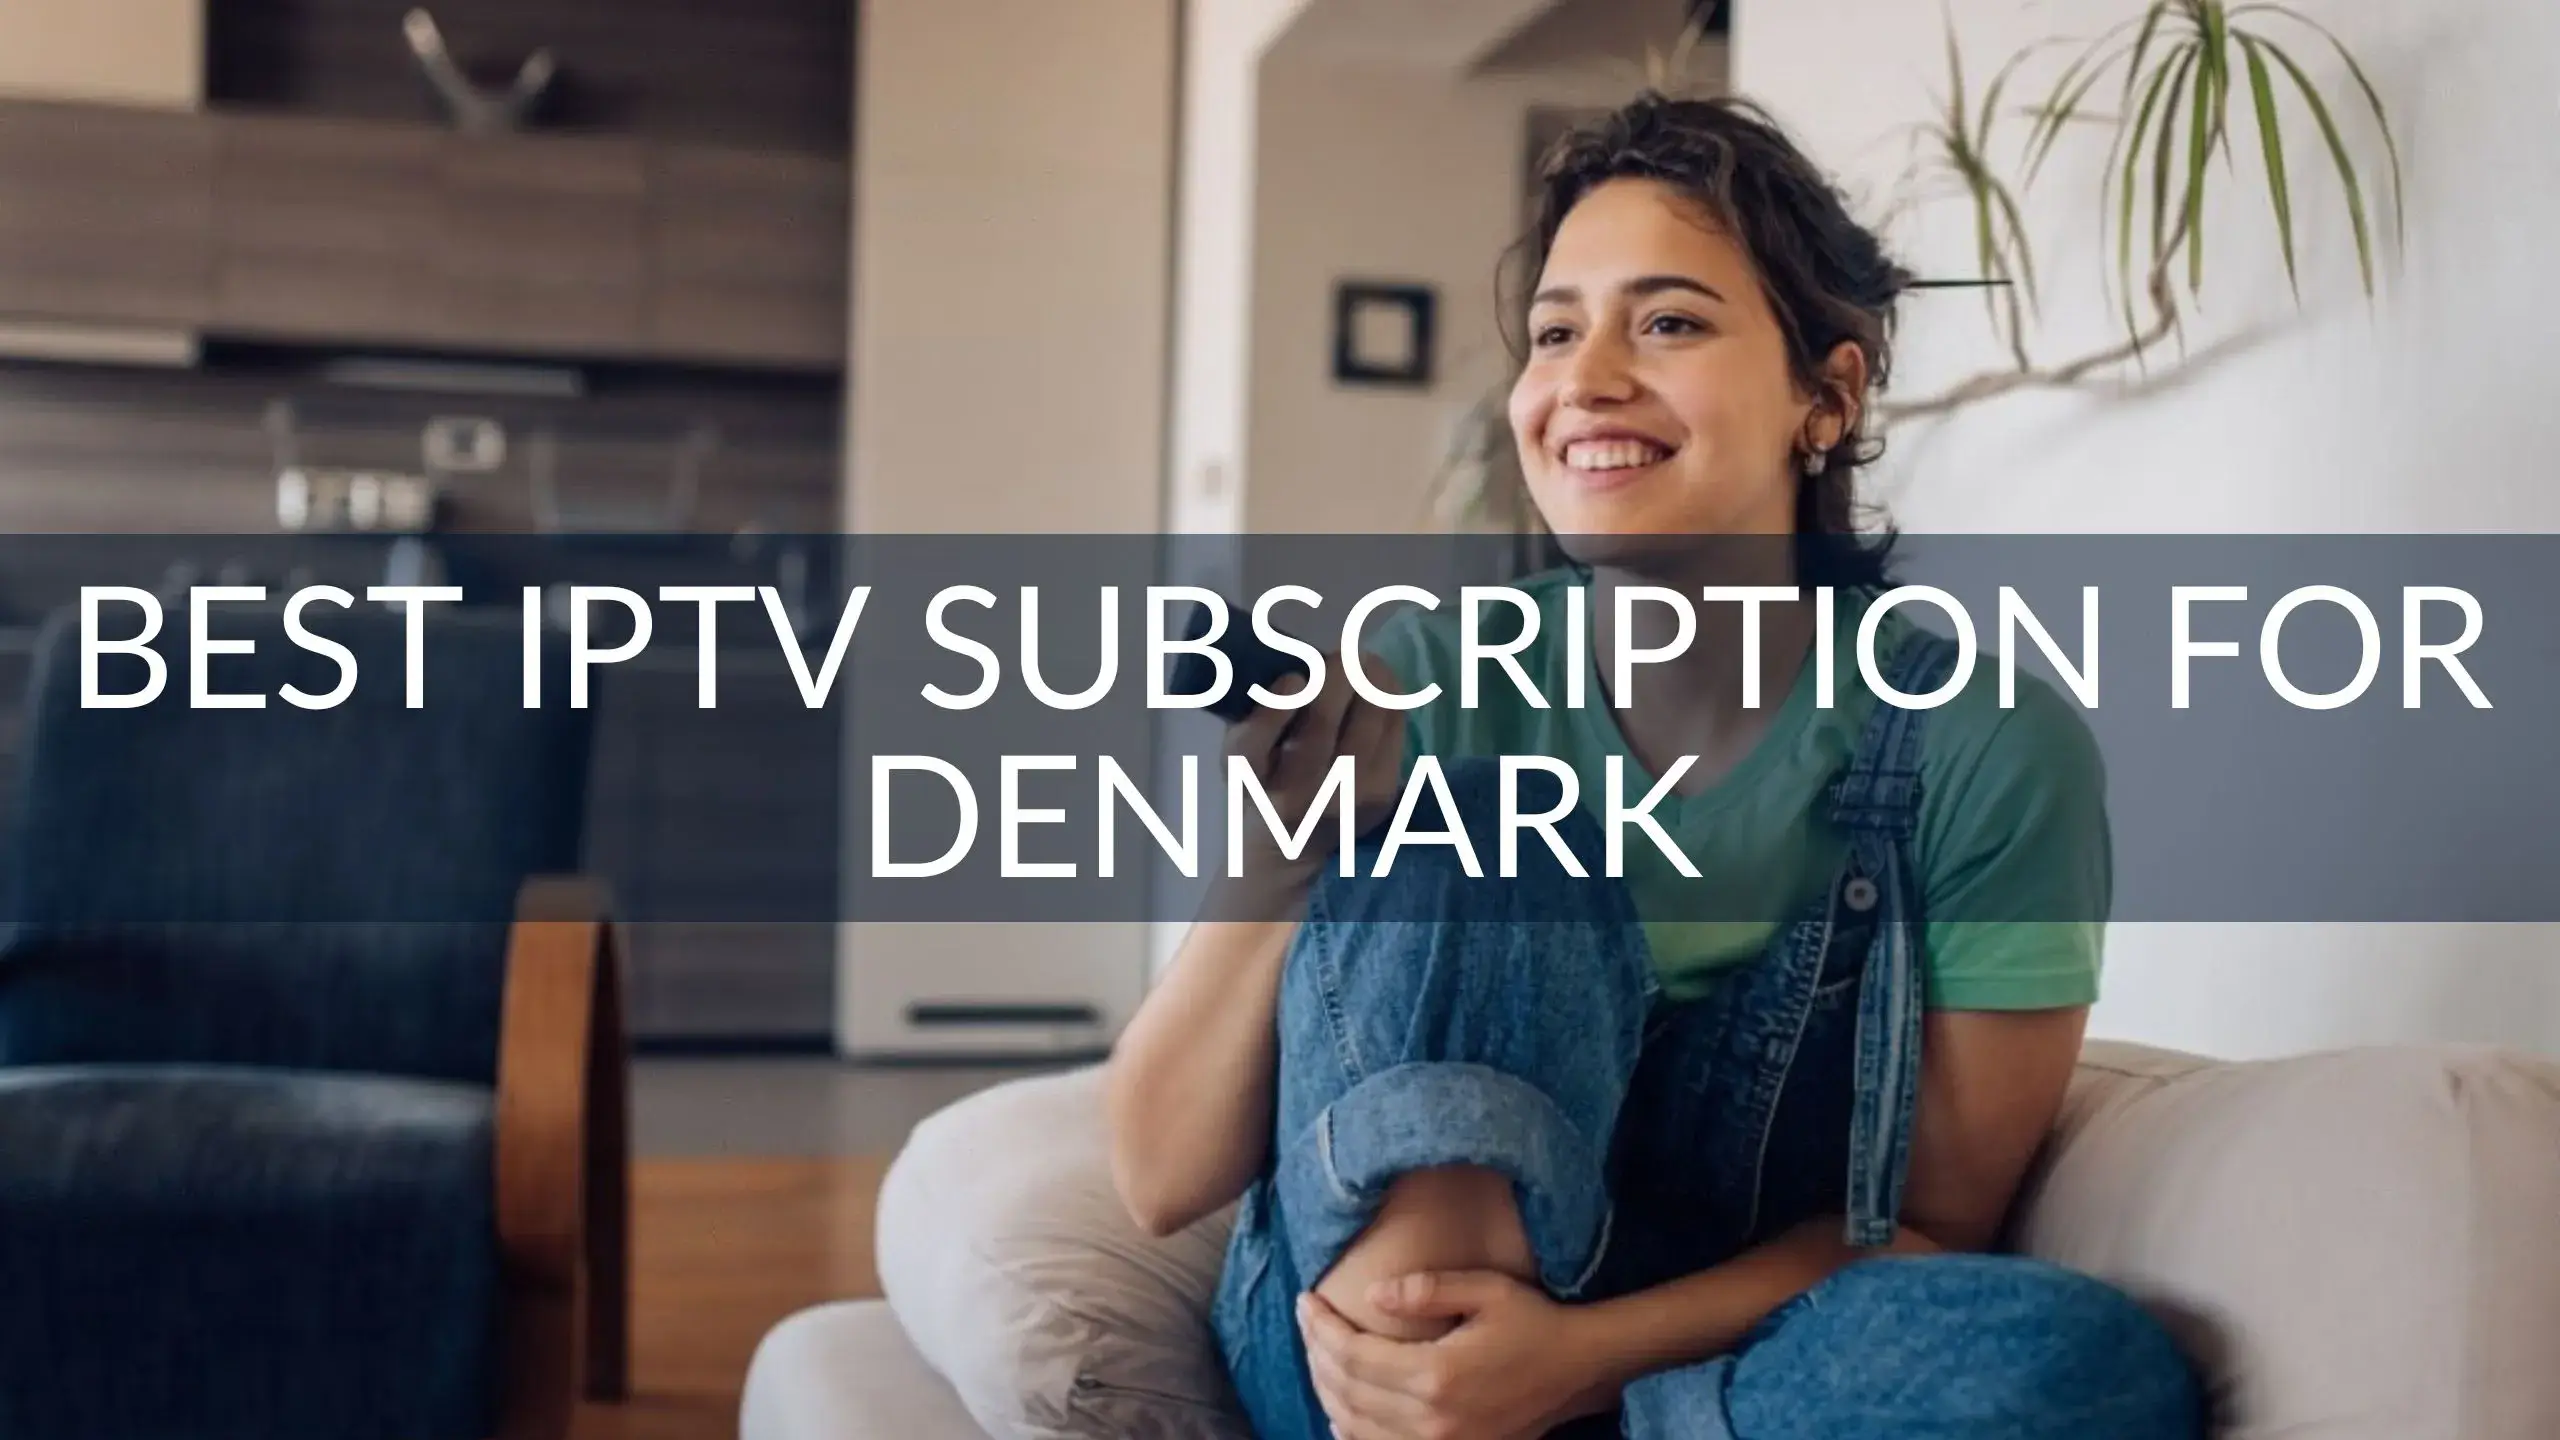 Best IPTV Subscription for Denmark